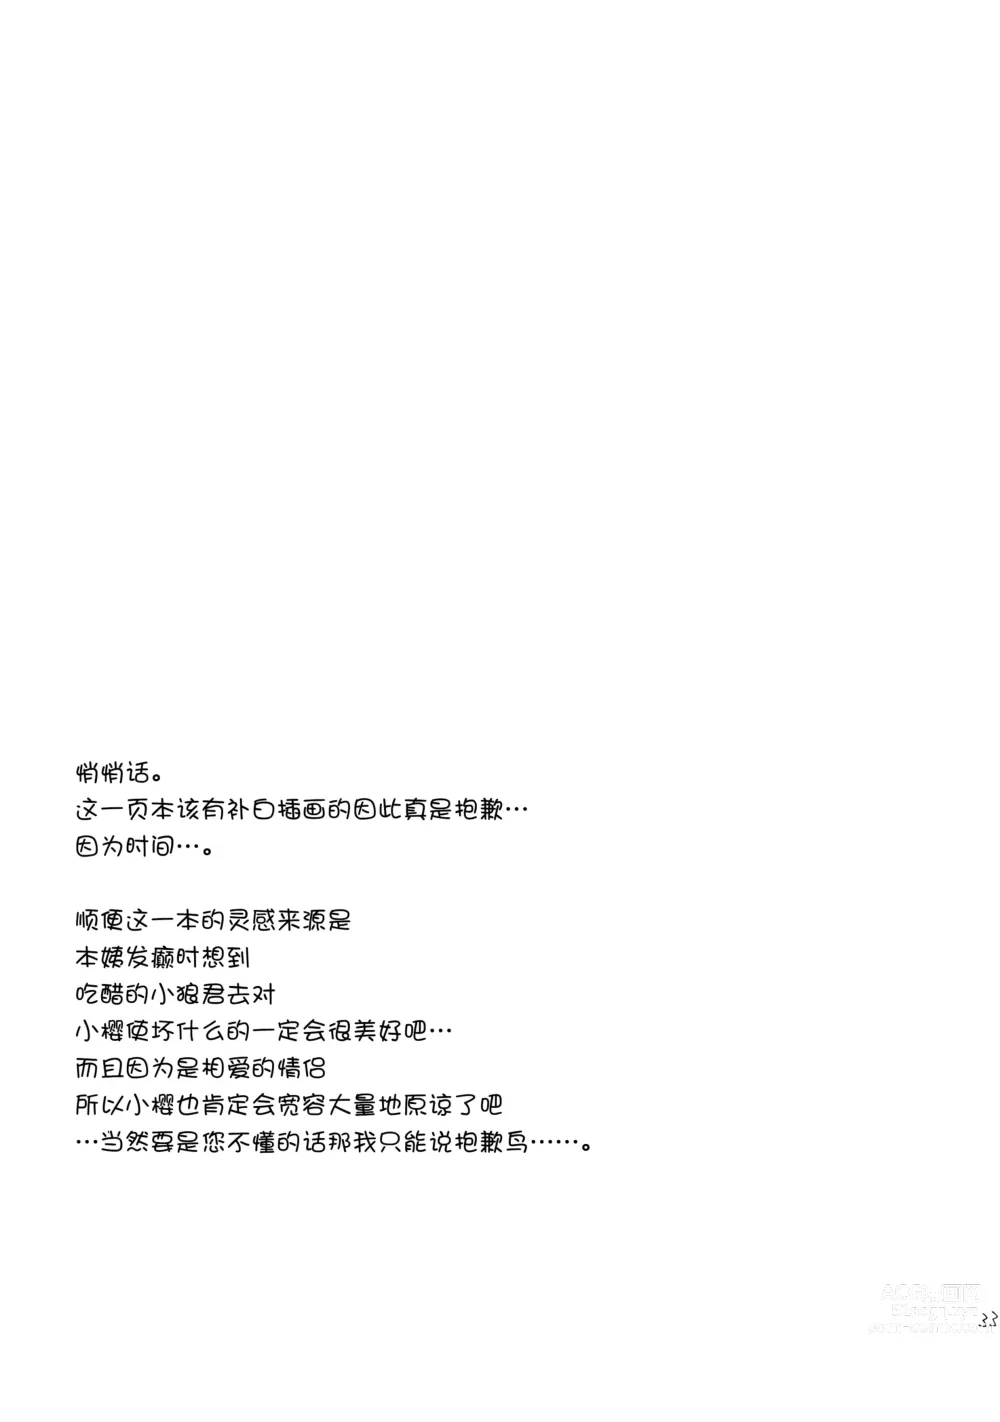 Page 33 of doujinshi Hitorijime